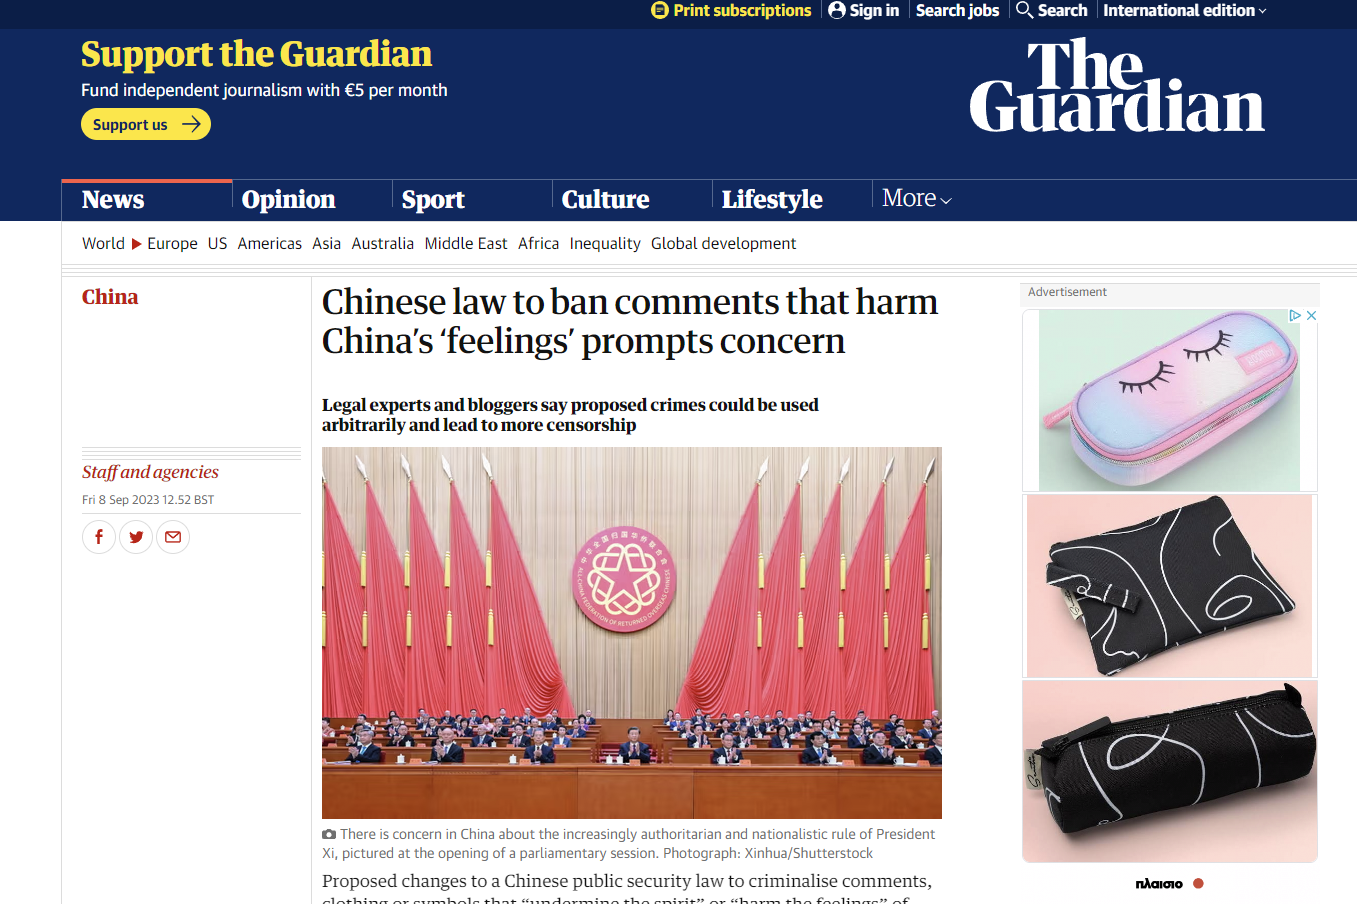 Φόβοι επιβολής λογοκρισίας και κώδικα ένδυσης στην Κίνα